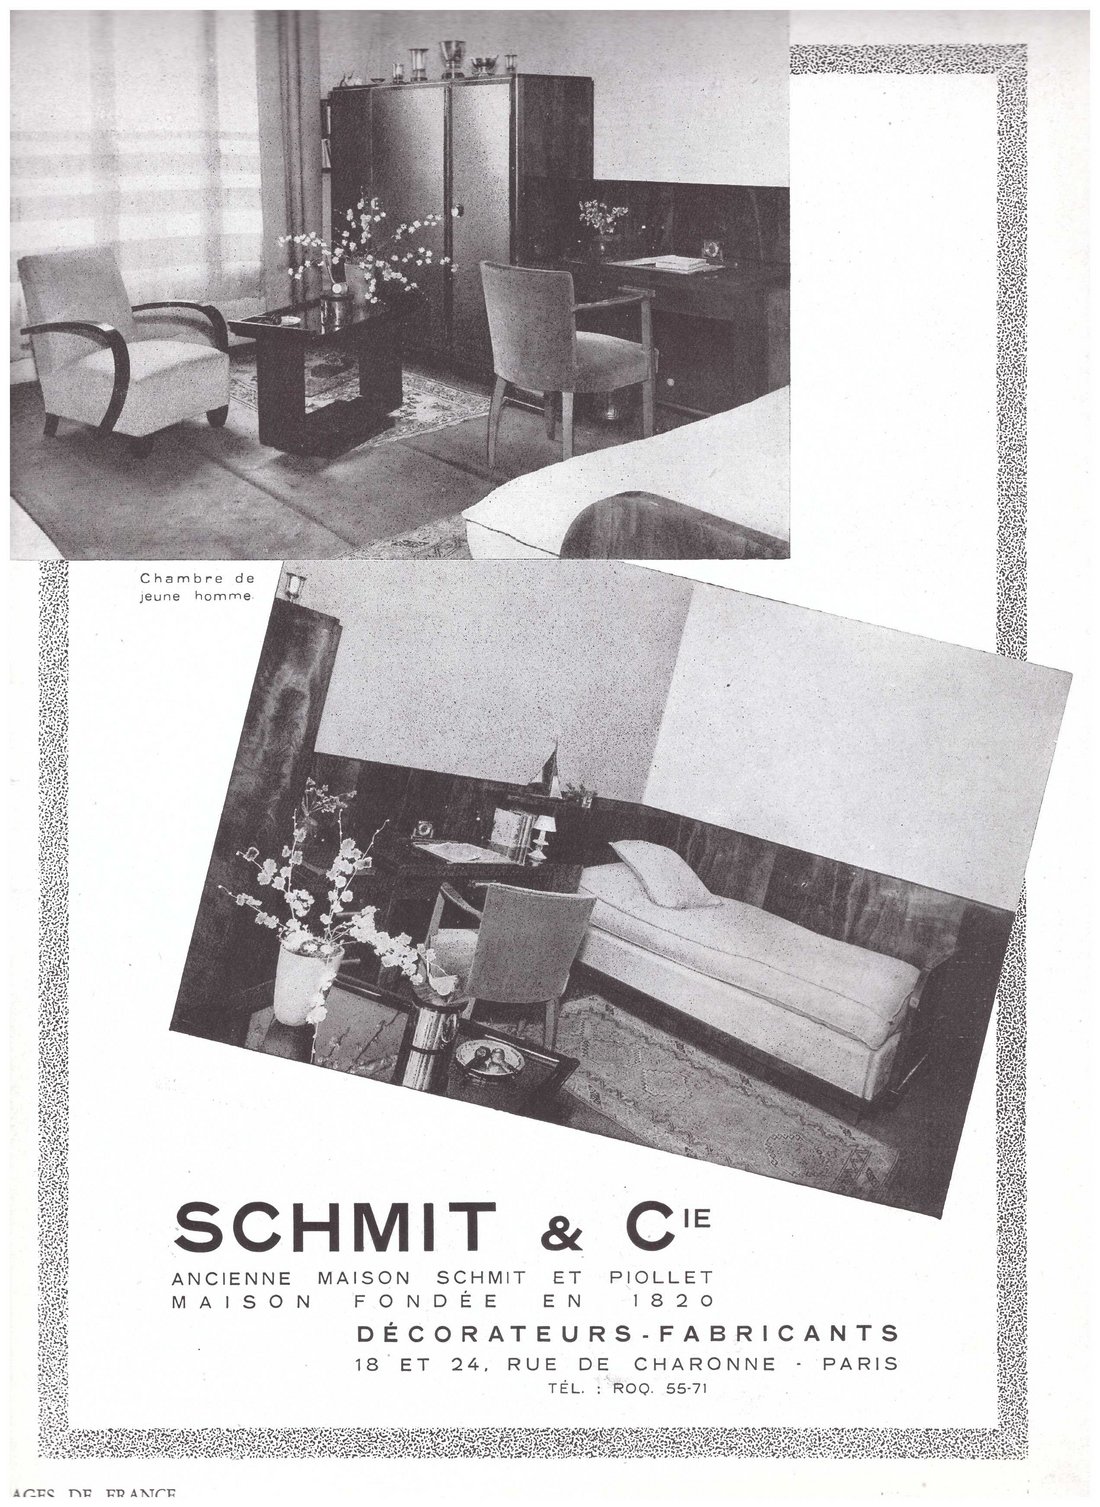 Publicité de Schmit et Cie, 1941 (?). Source : Collection particulière.